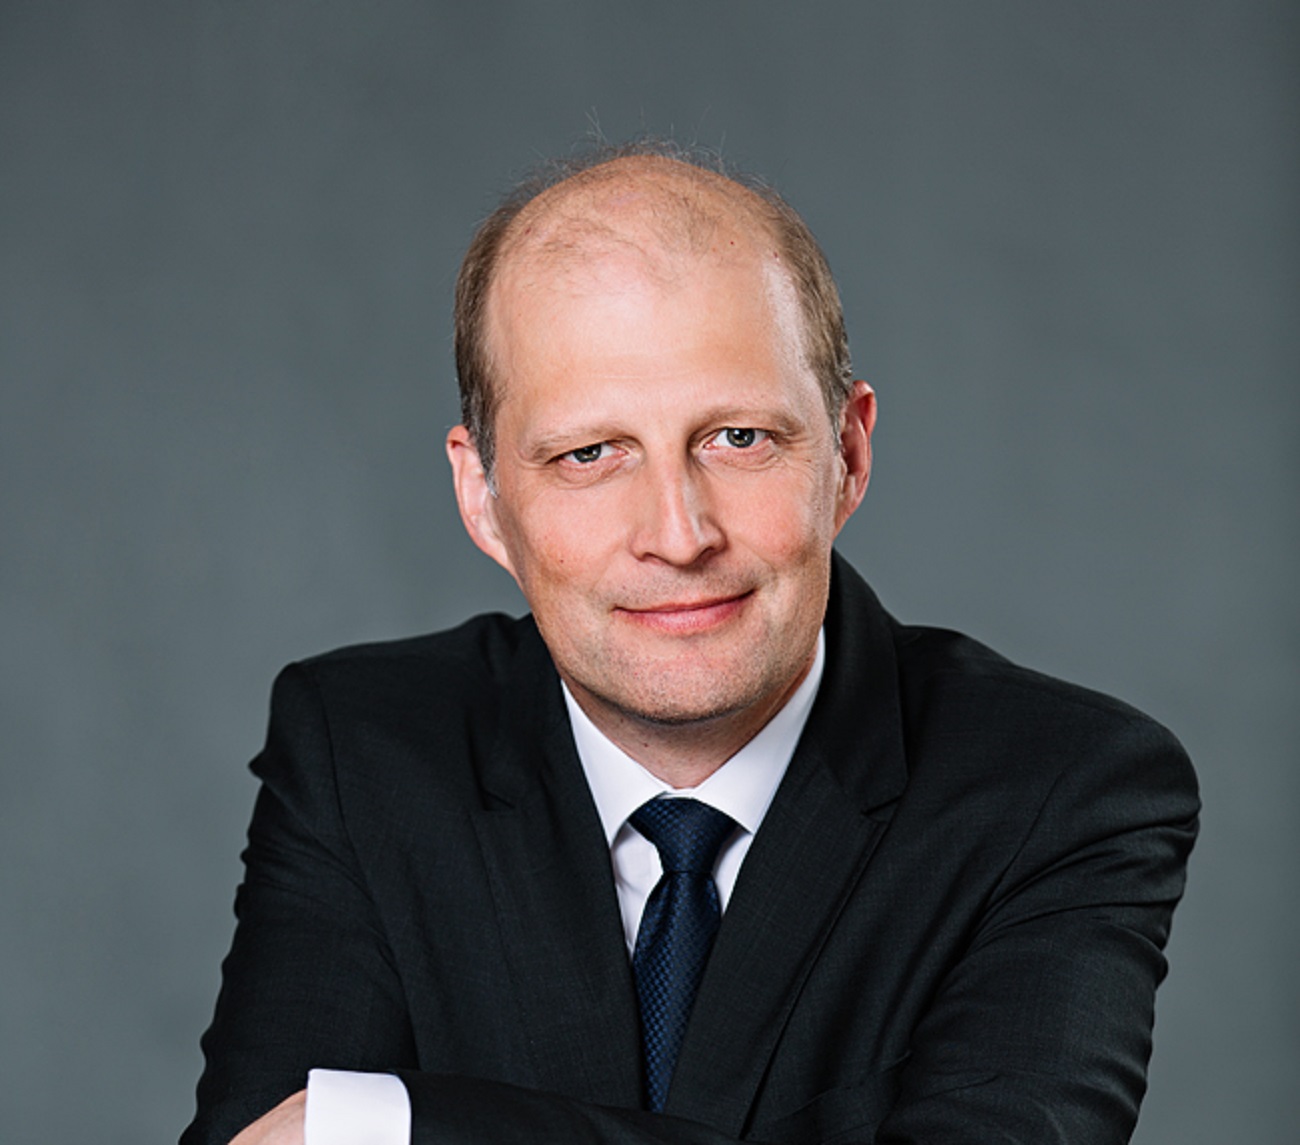 Marcus Osegowitsch è il nuovo Amministratore Delegato di Volkswagen Italia